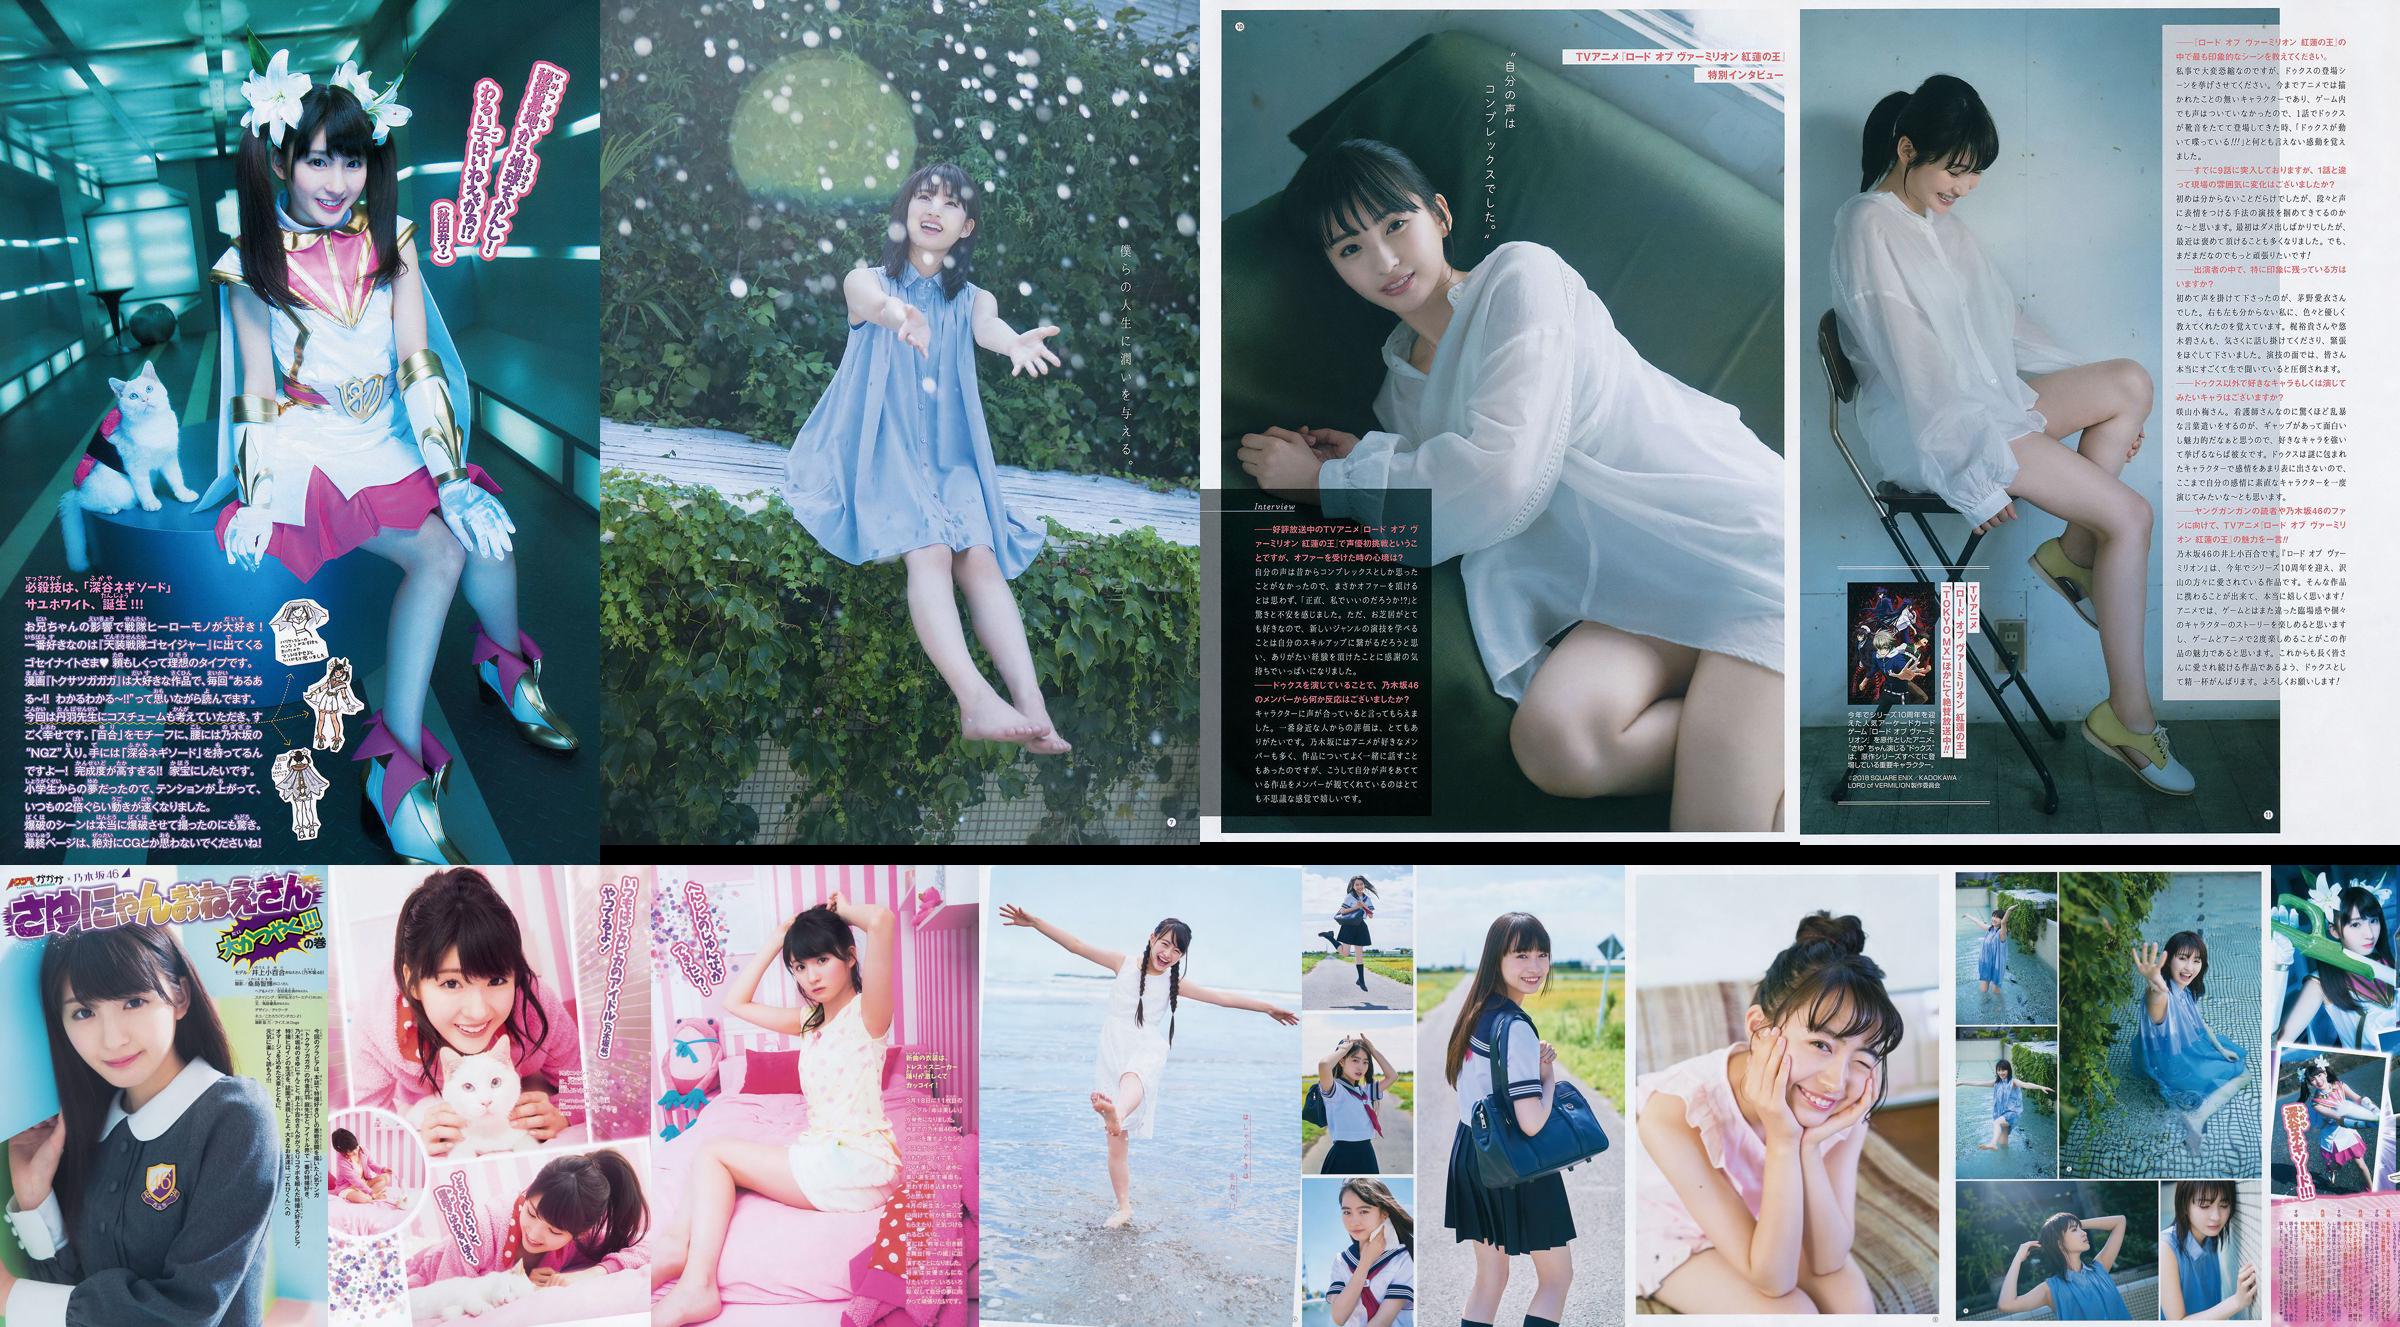 [Young Gangan] Sayuri Inoue Its original sand 2018 No.18 Photo Magazine No.62cc3e Page 8